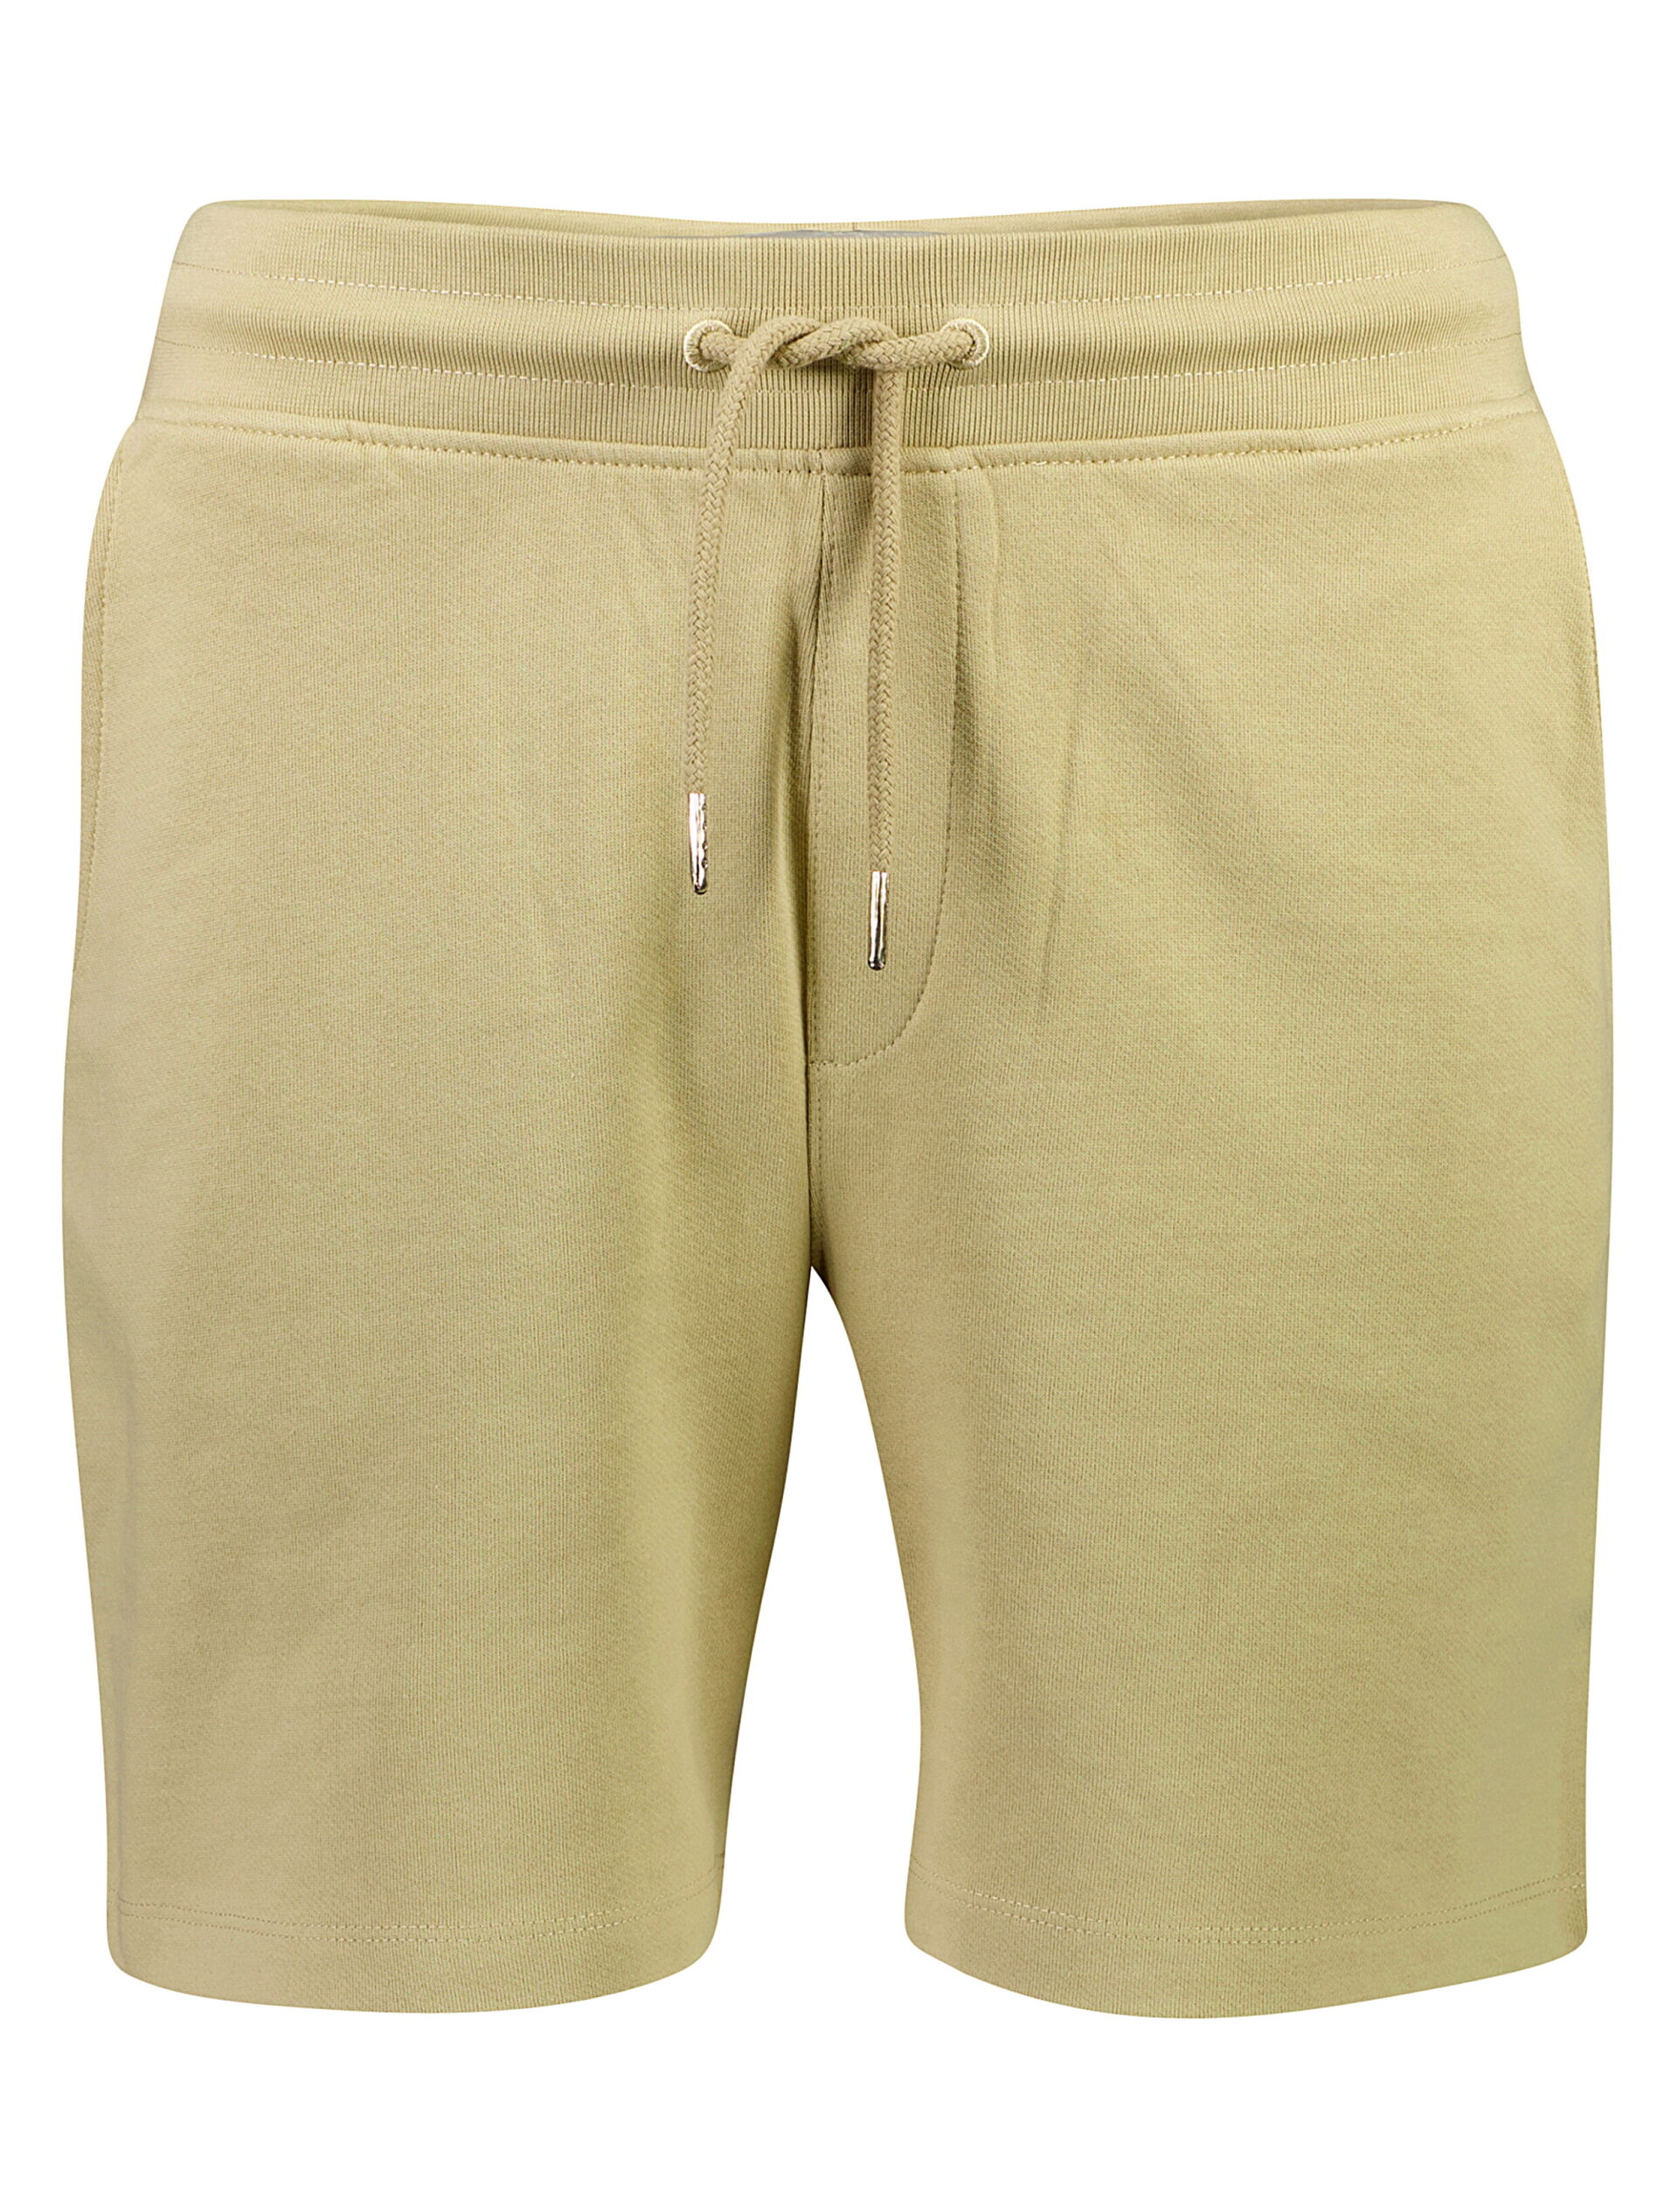 Casual shorts Casual shorts Grey 30-508080